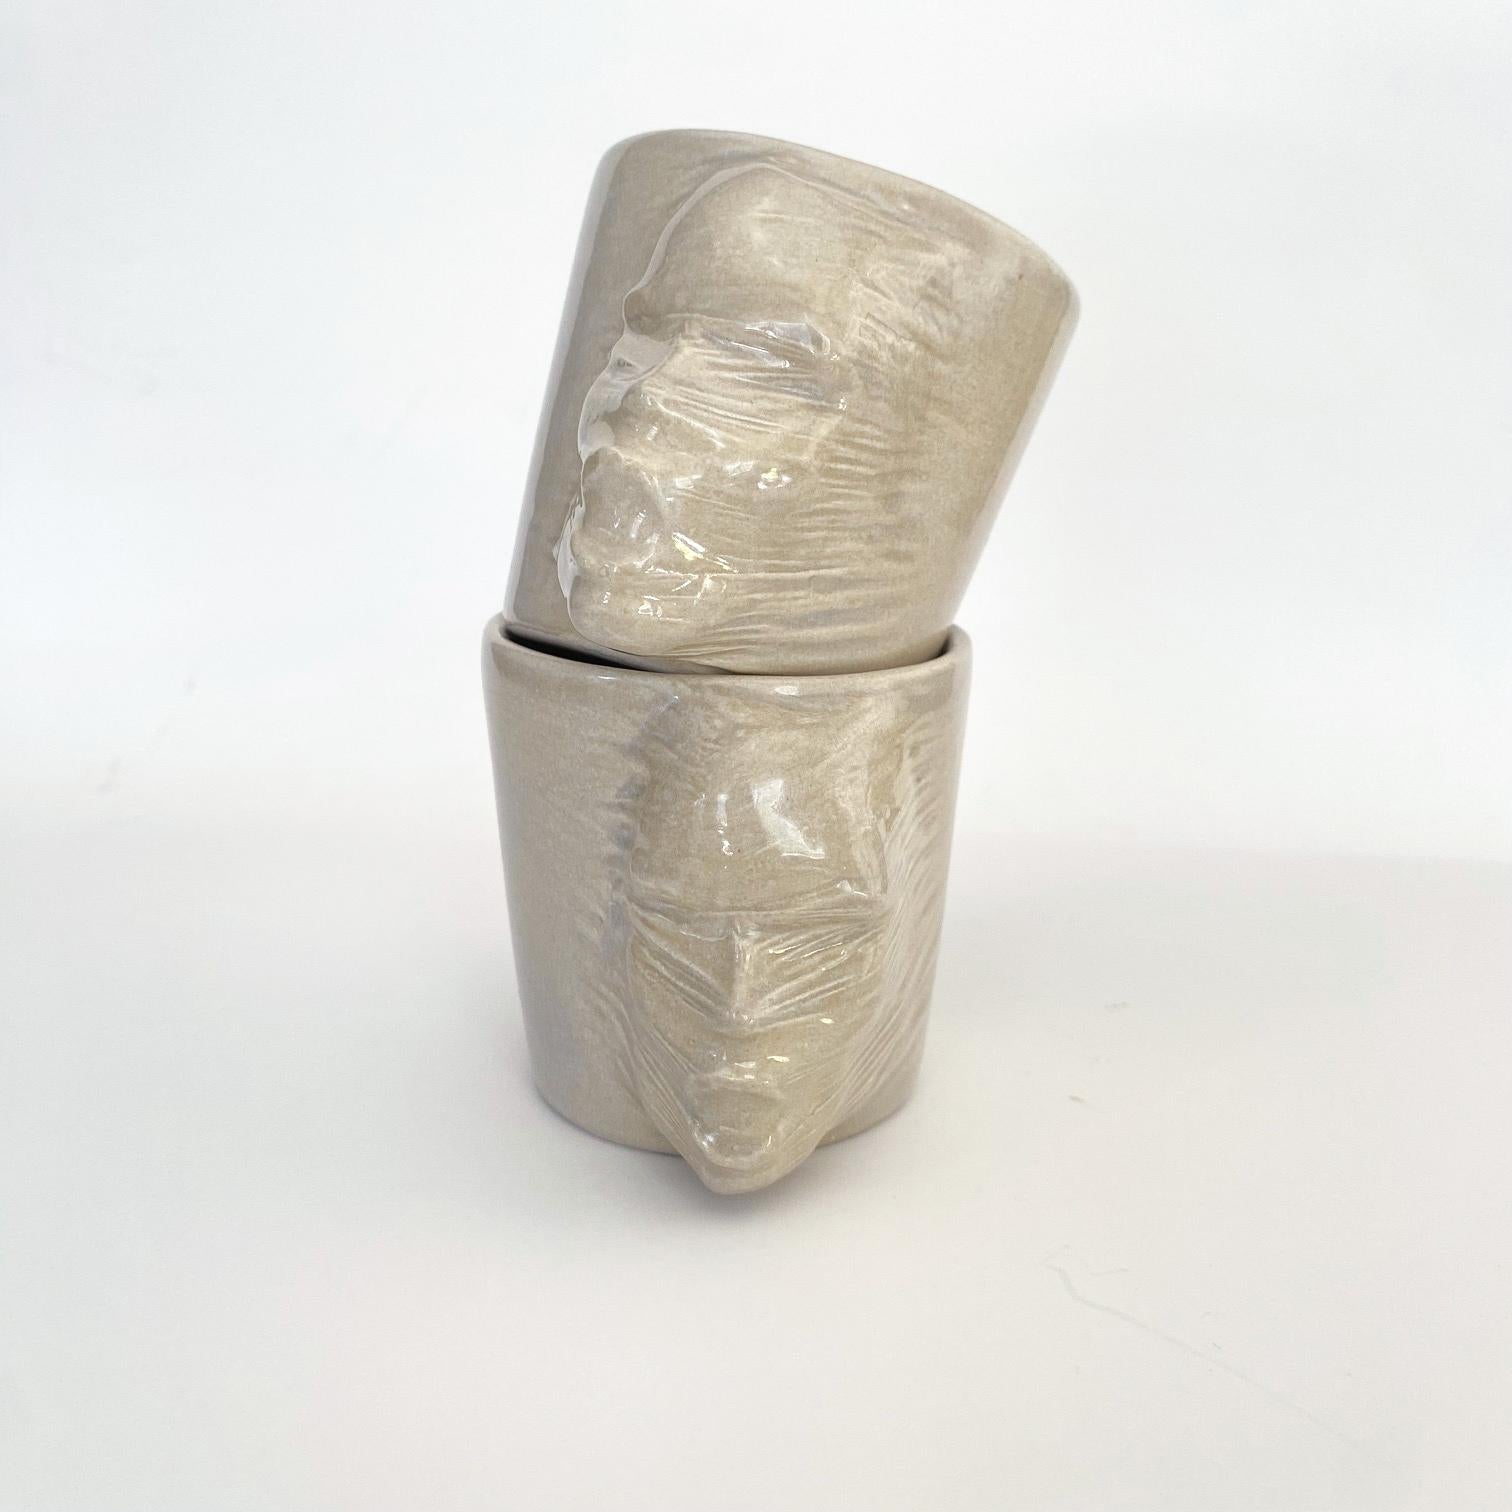 Un ensemble de 2 tasses sculpturales en céramique fabriquées à la main par l'artiste céramiste Hulya Sozer. 
Glaçage alimentaire.
Lavable au lave-vaisselle.

Hauteur : 7cm / Profondeur : 9cm / Diamètre : 7cm
Volume : 120ml
Le set comprend 2 tasses